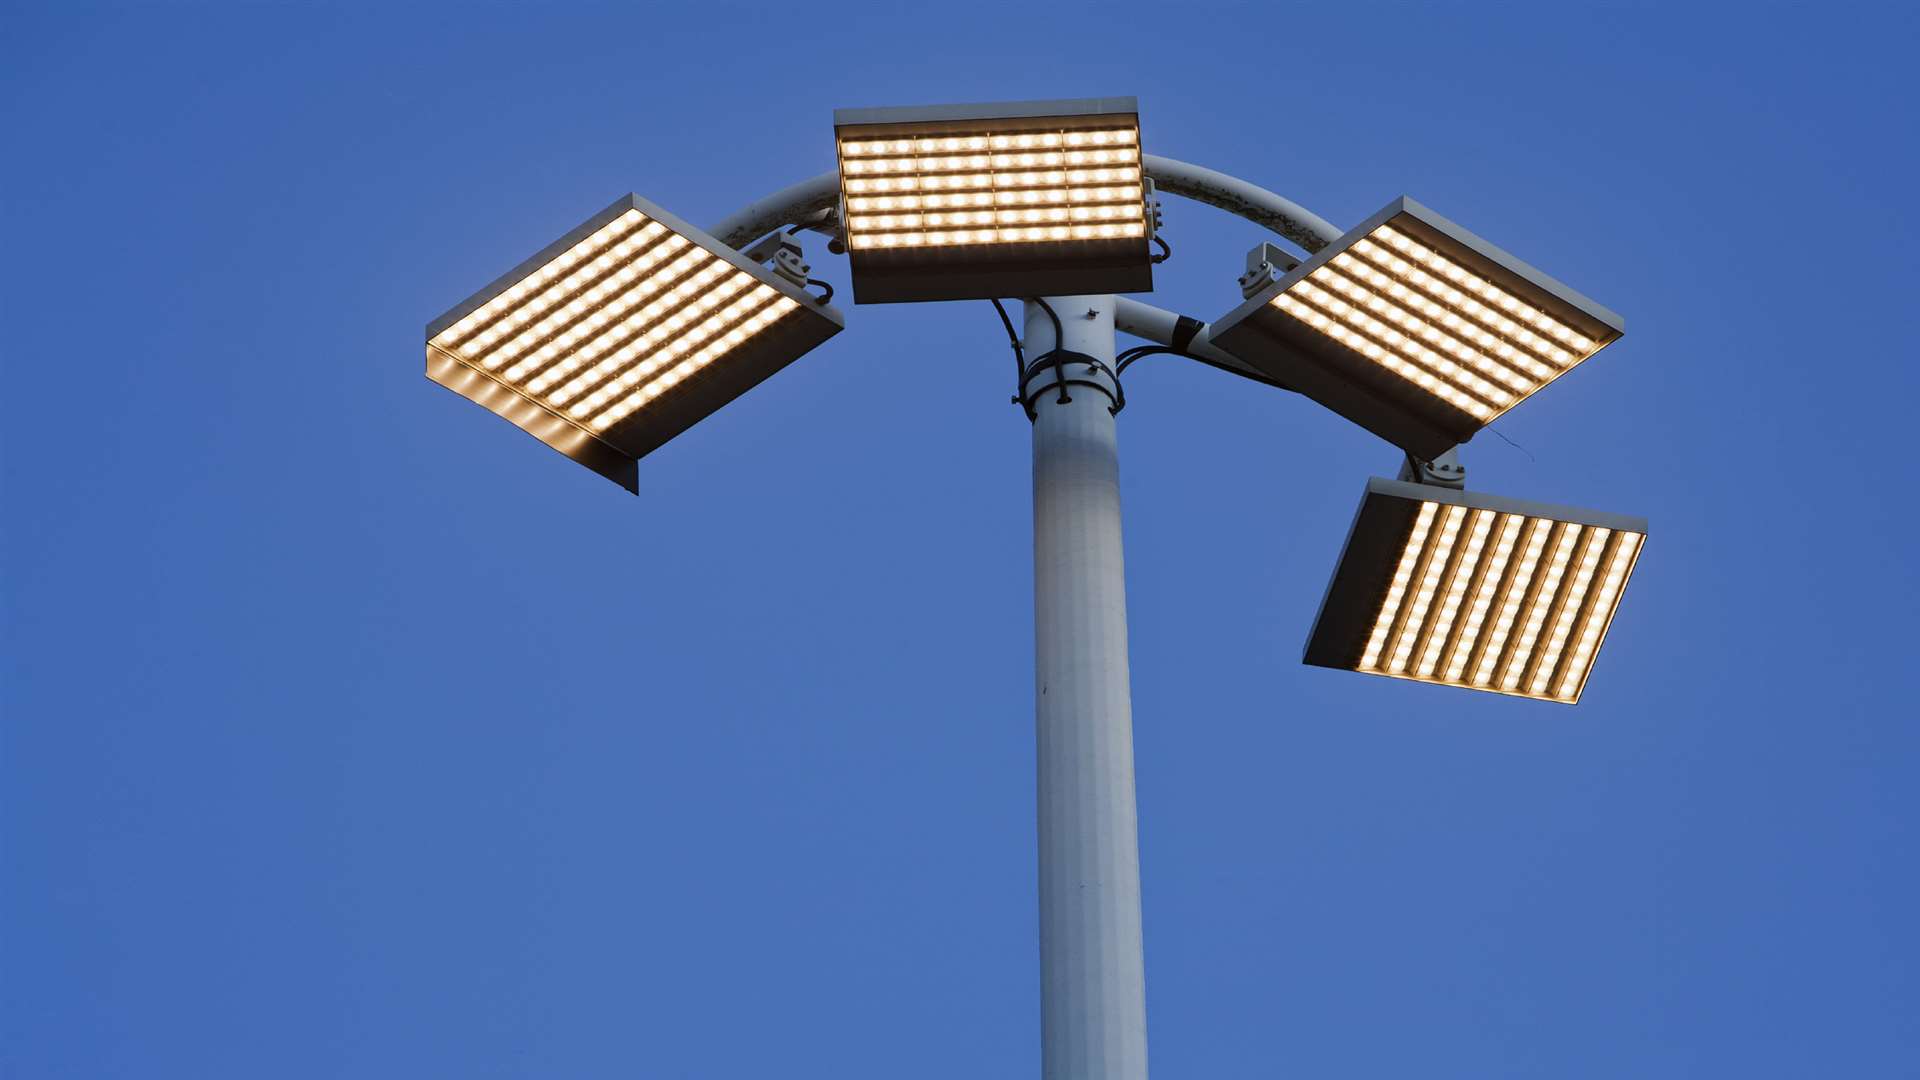 An LED street light